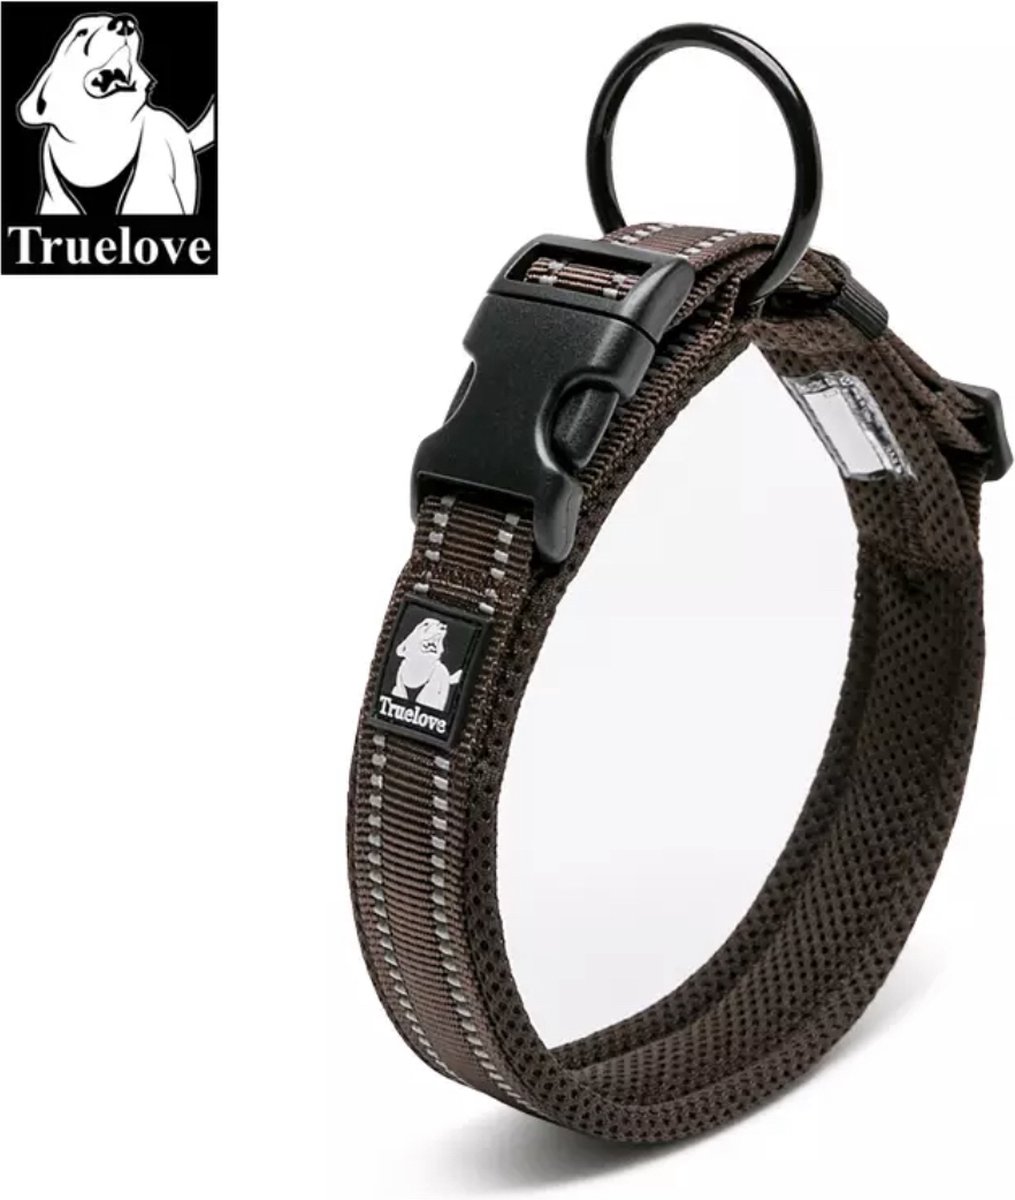 Truelove halsband - Halsband - Honden halsband - Halsband voor honden -Bruin XL 50-55 cm